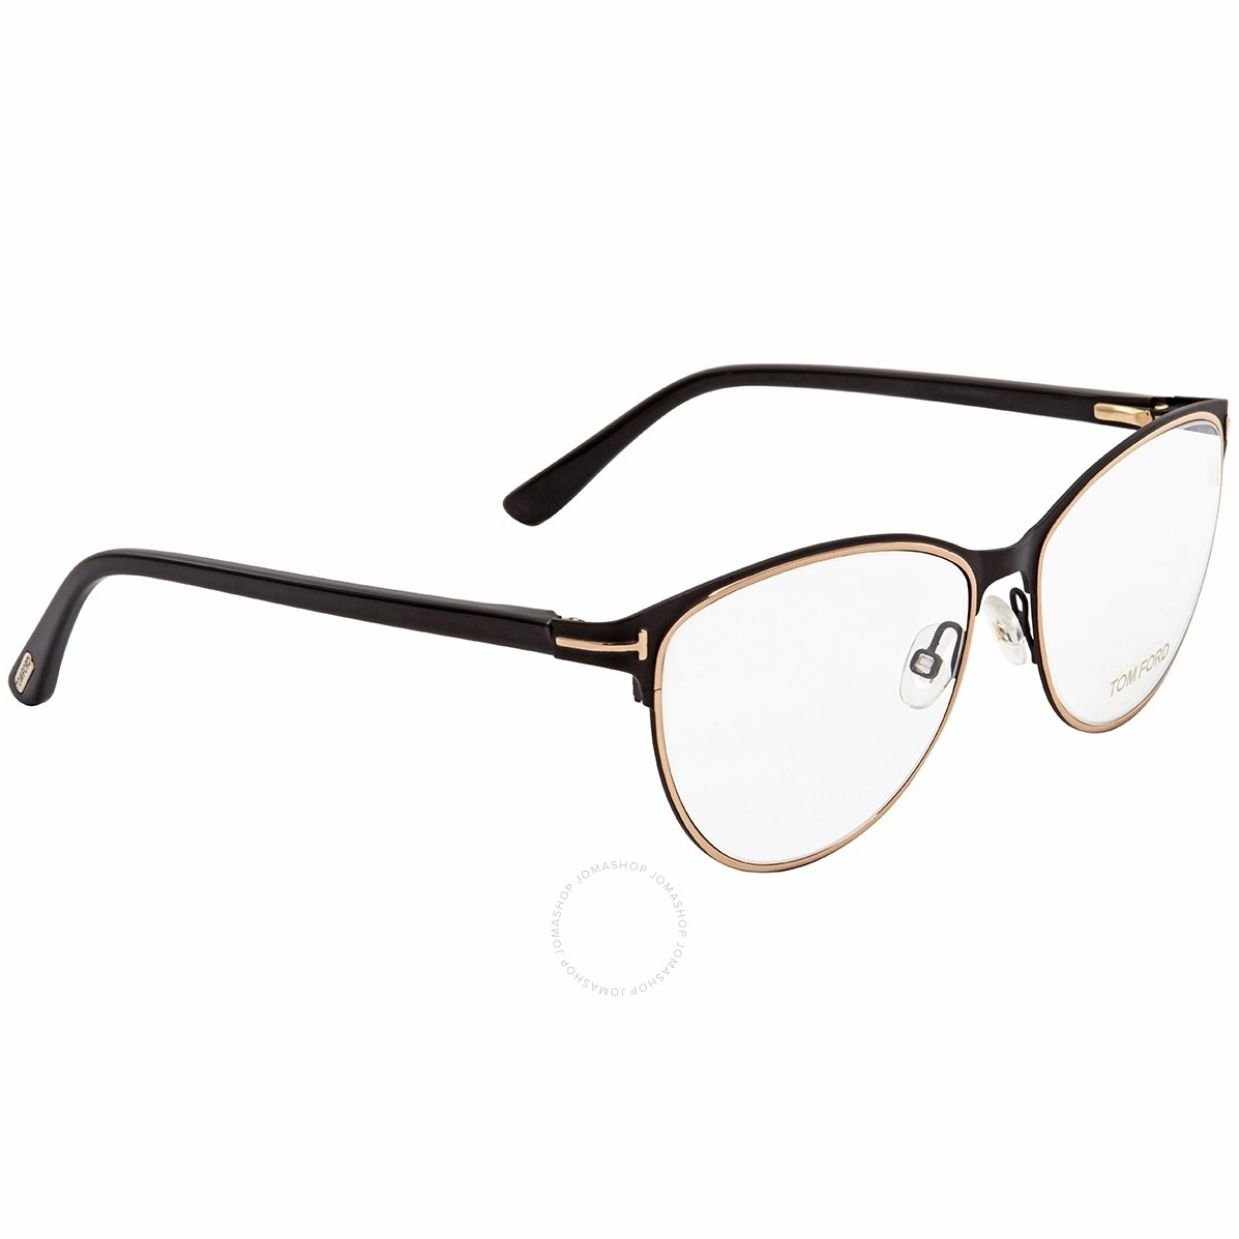 Tom Ford Black Cat Eye Eyeglass Frames 005 – Tila's House